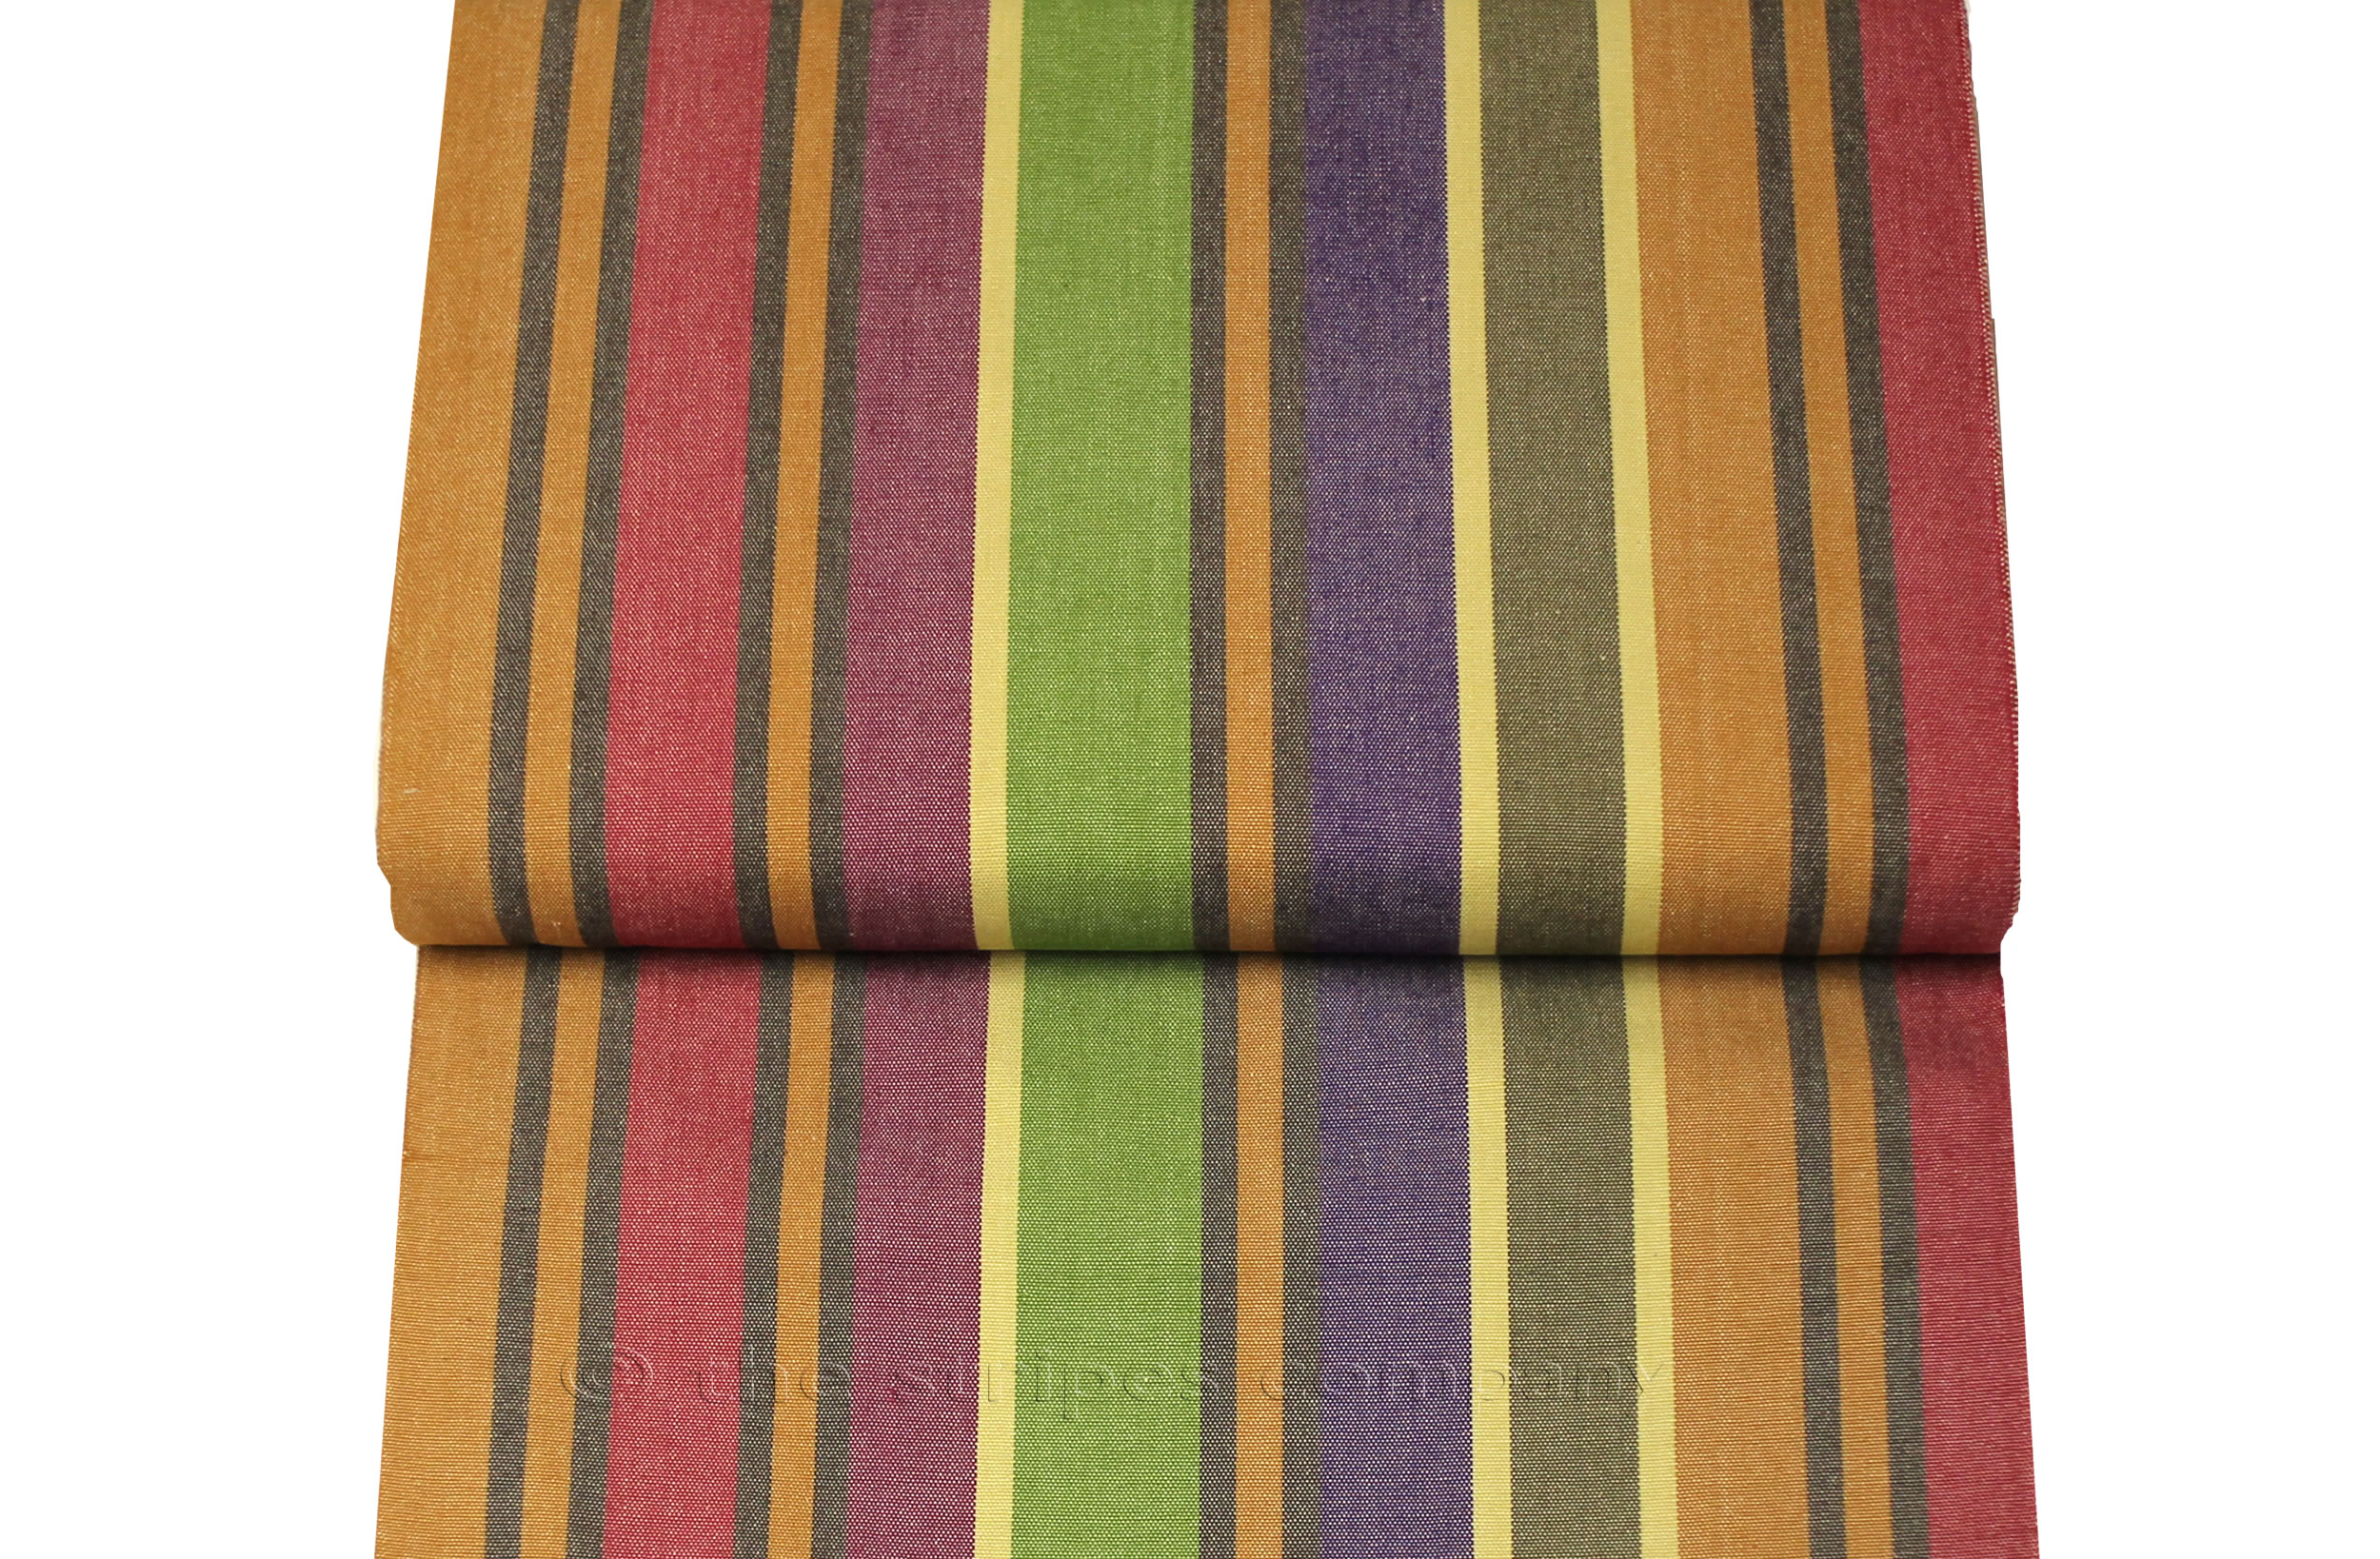 Deckchair Canvas | Striped Deck Chair Fabric - Yoga stripe